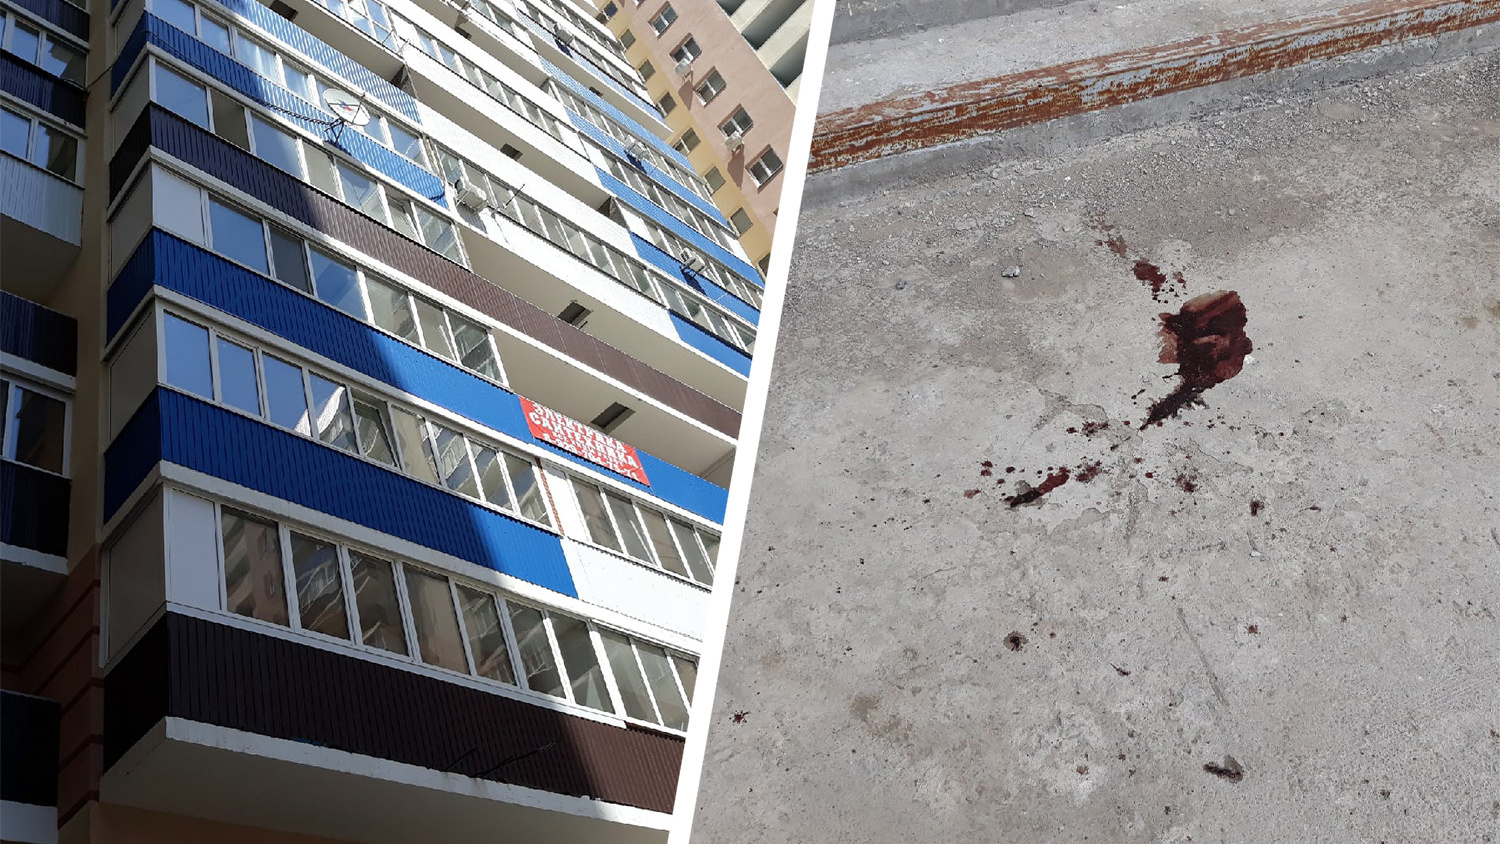 Дочь переехала жить к. Самара мать выбросила дочь с 6 этажа. В Челябинске женщина выбросилась из окна двоих детей. Женщина в Самаре выбросила ребенка с 6 этажа.